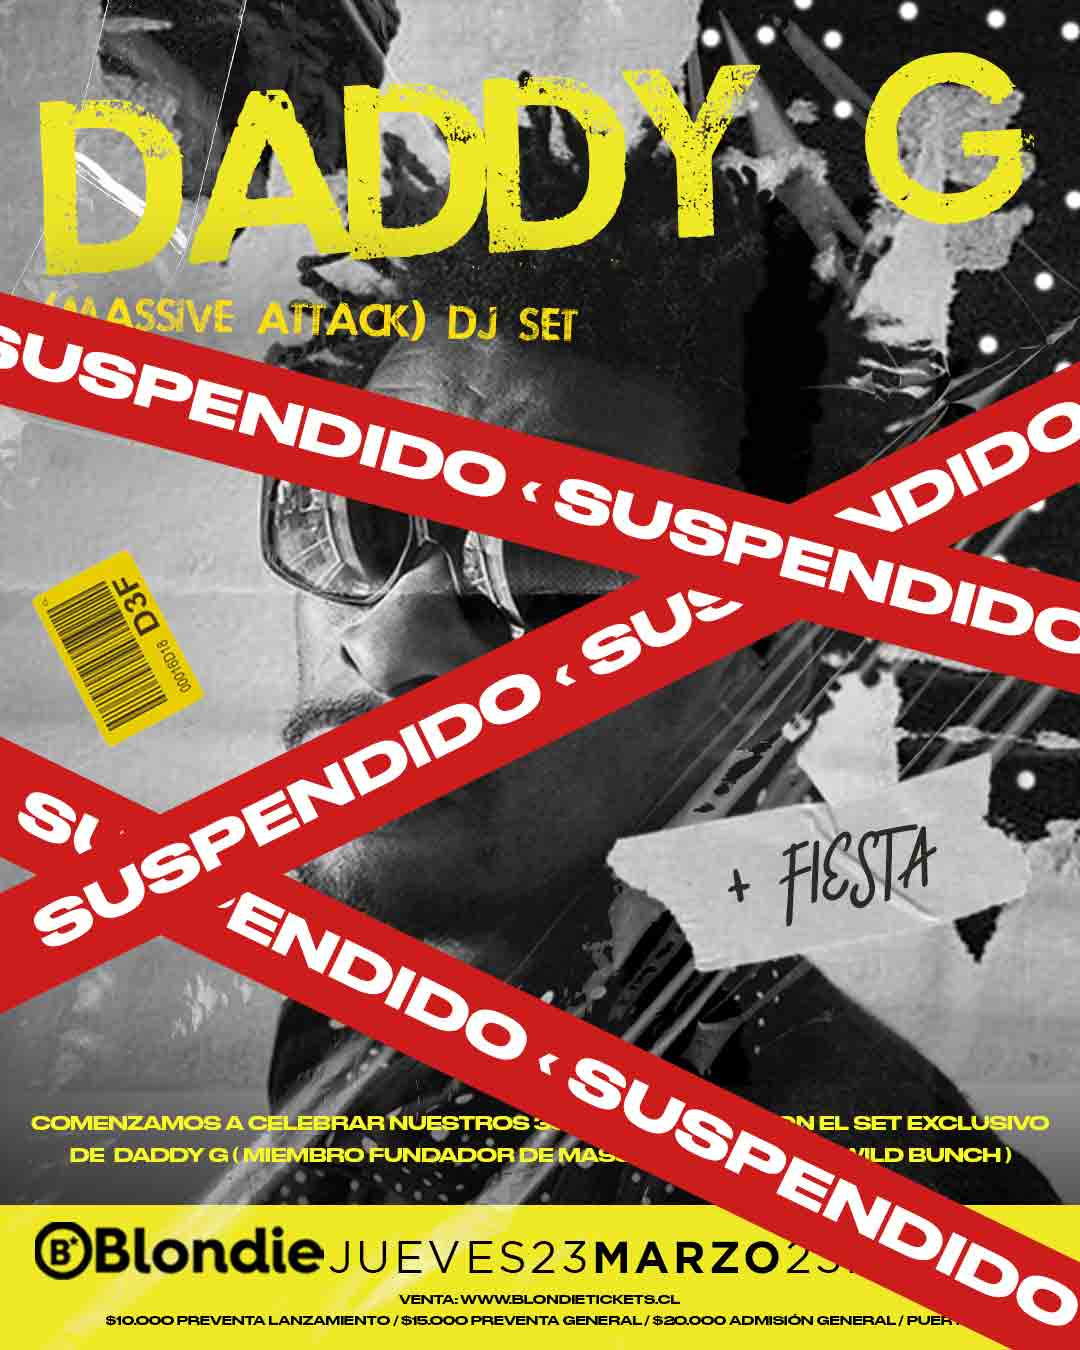 Daddy G de Massive Attack suspende su visita a Chile